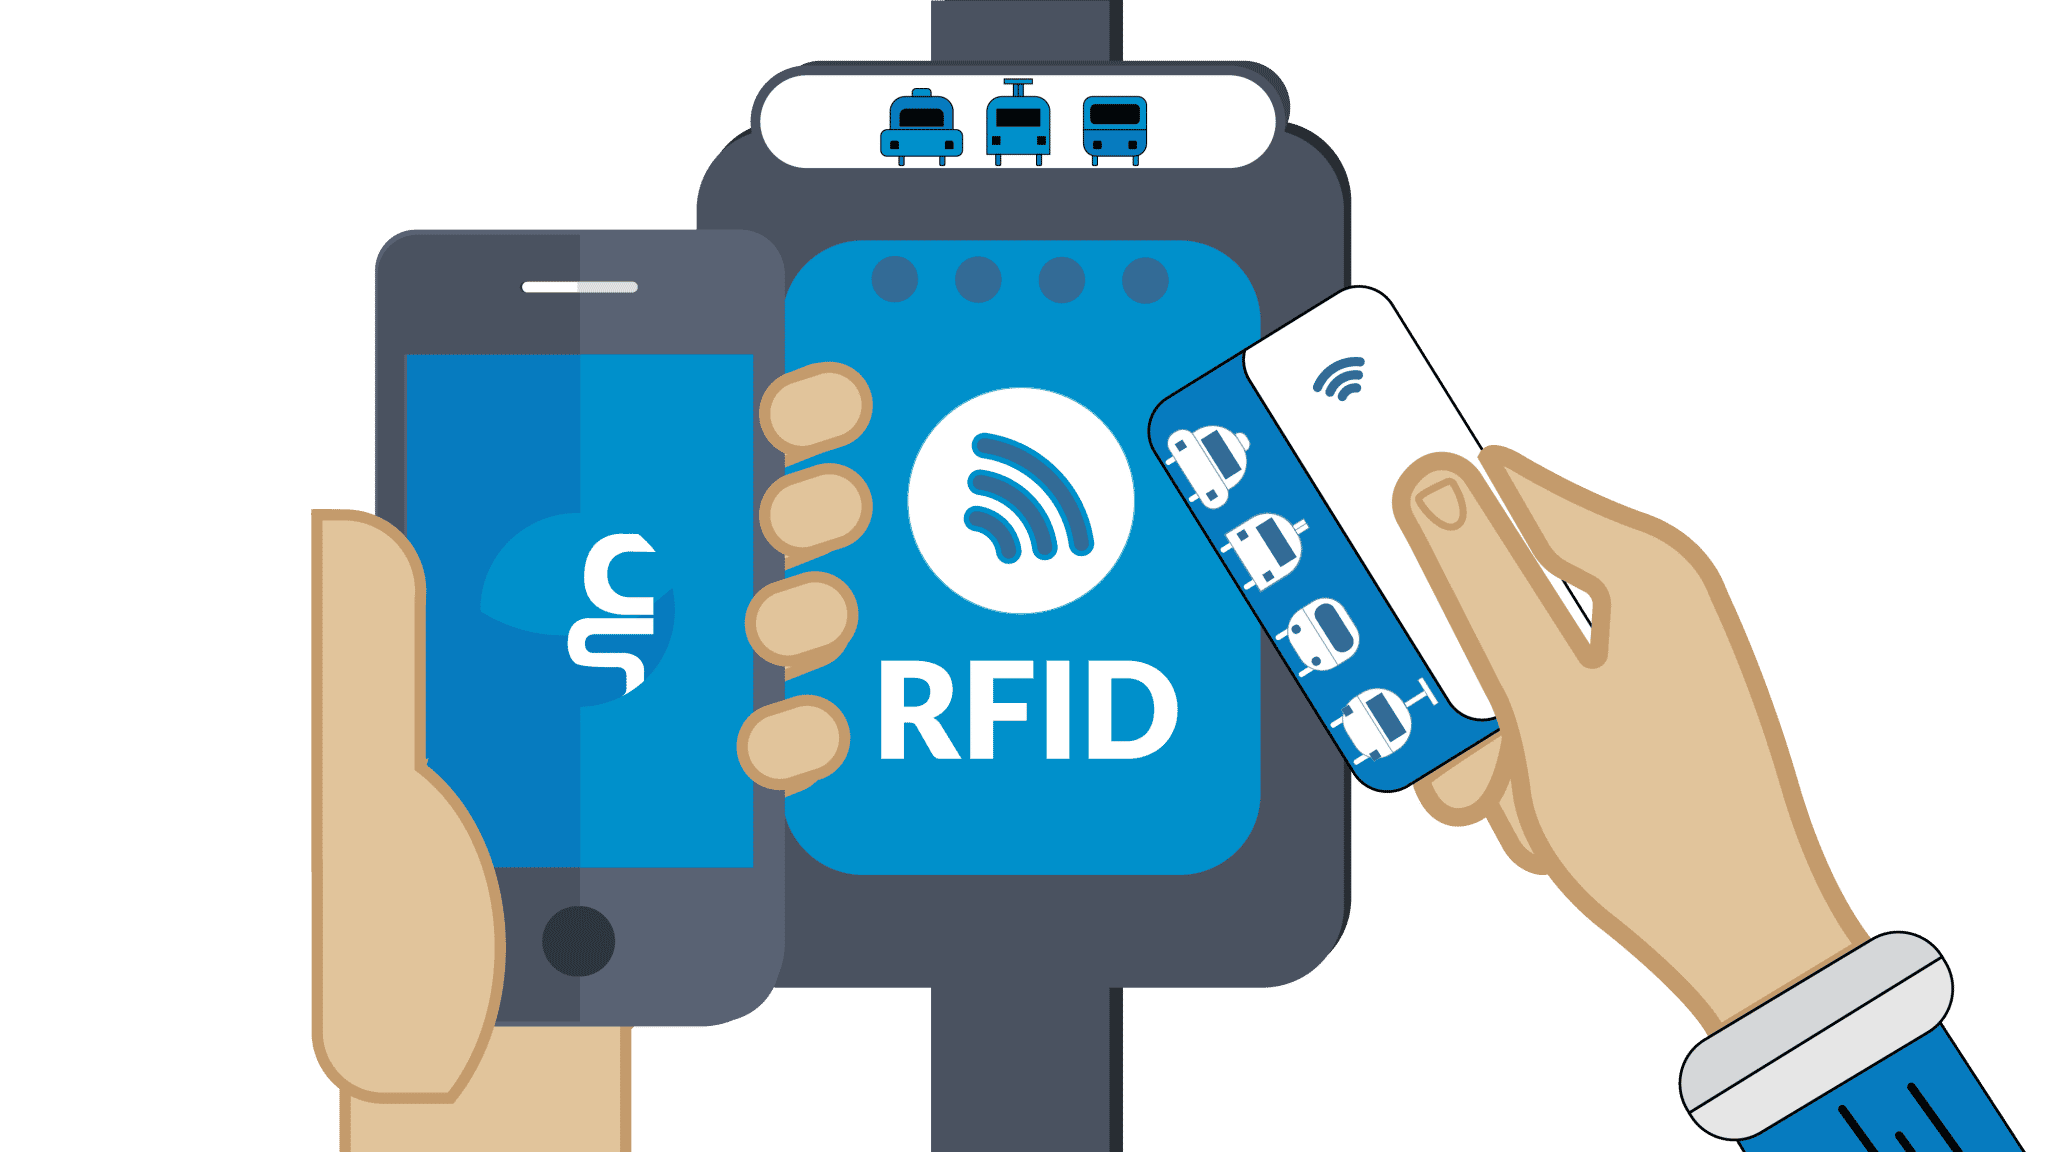 Zahlung mit Tags & Karten Einfach zahlen, ohne Kontakt: Nutzen Sie unsere RFID-Technologie für bequemes bargeldloses Bezahlen.